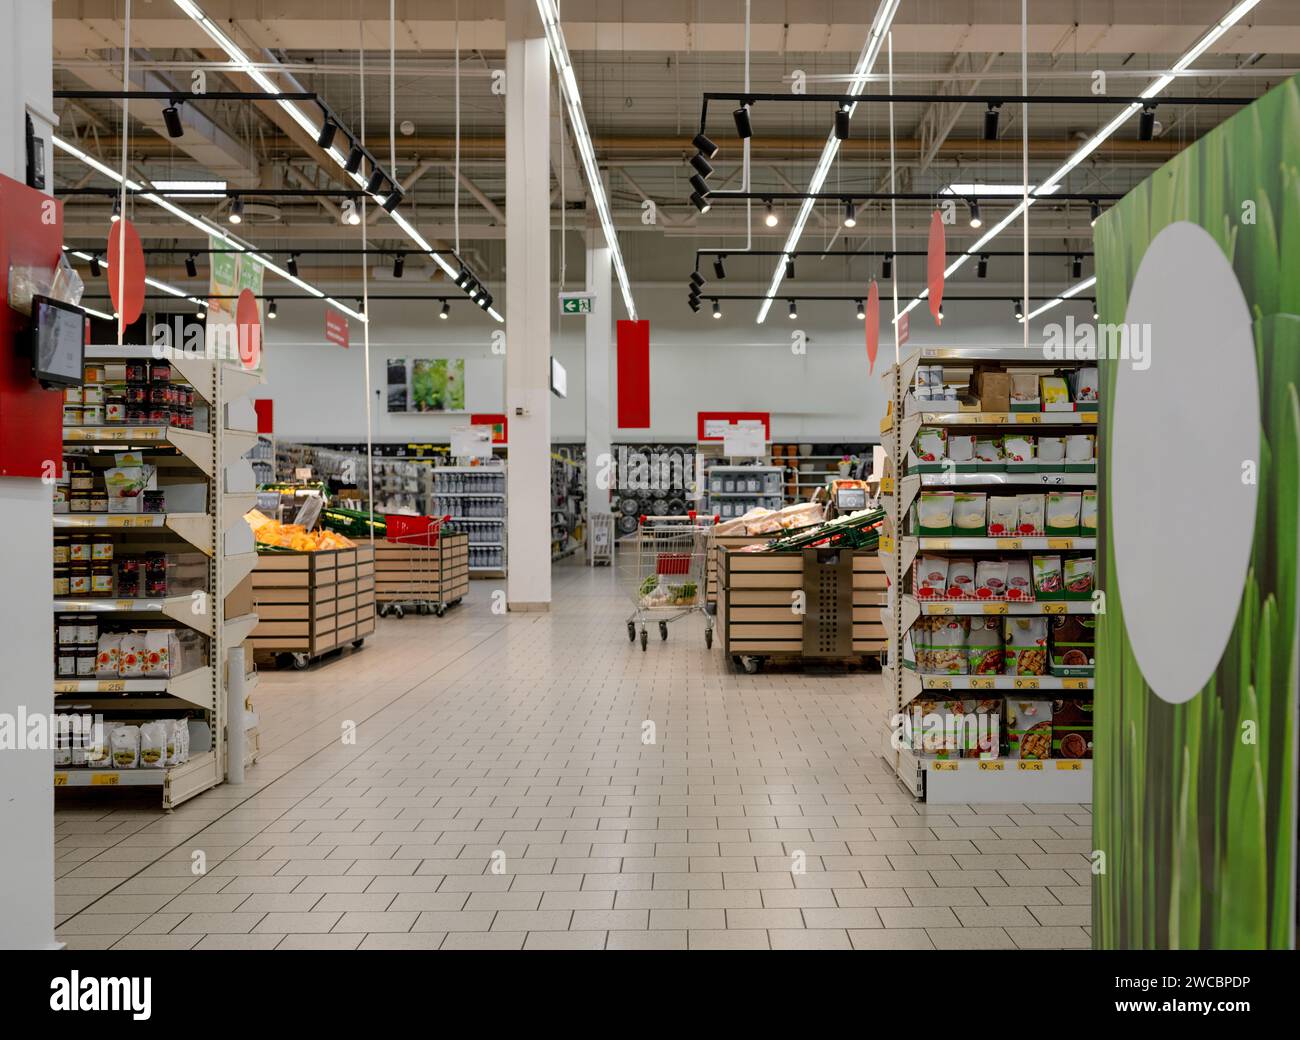 Allées de supermarché avec marchandises dans cette image Banque D'Images